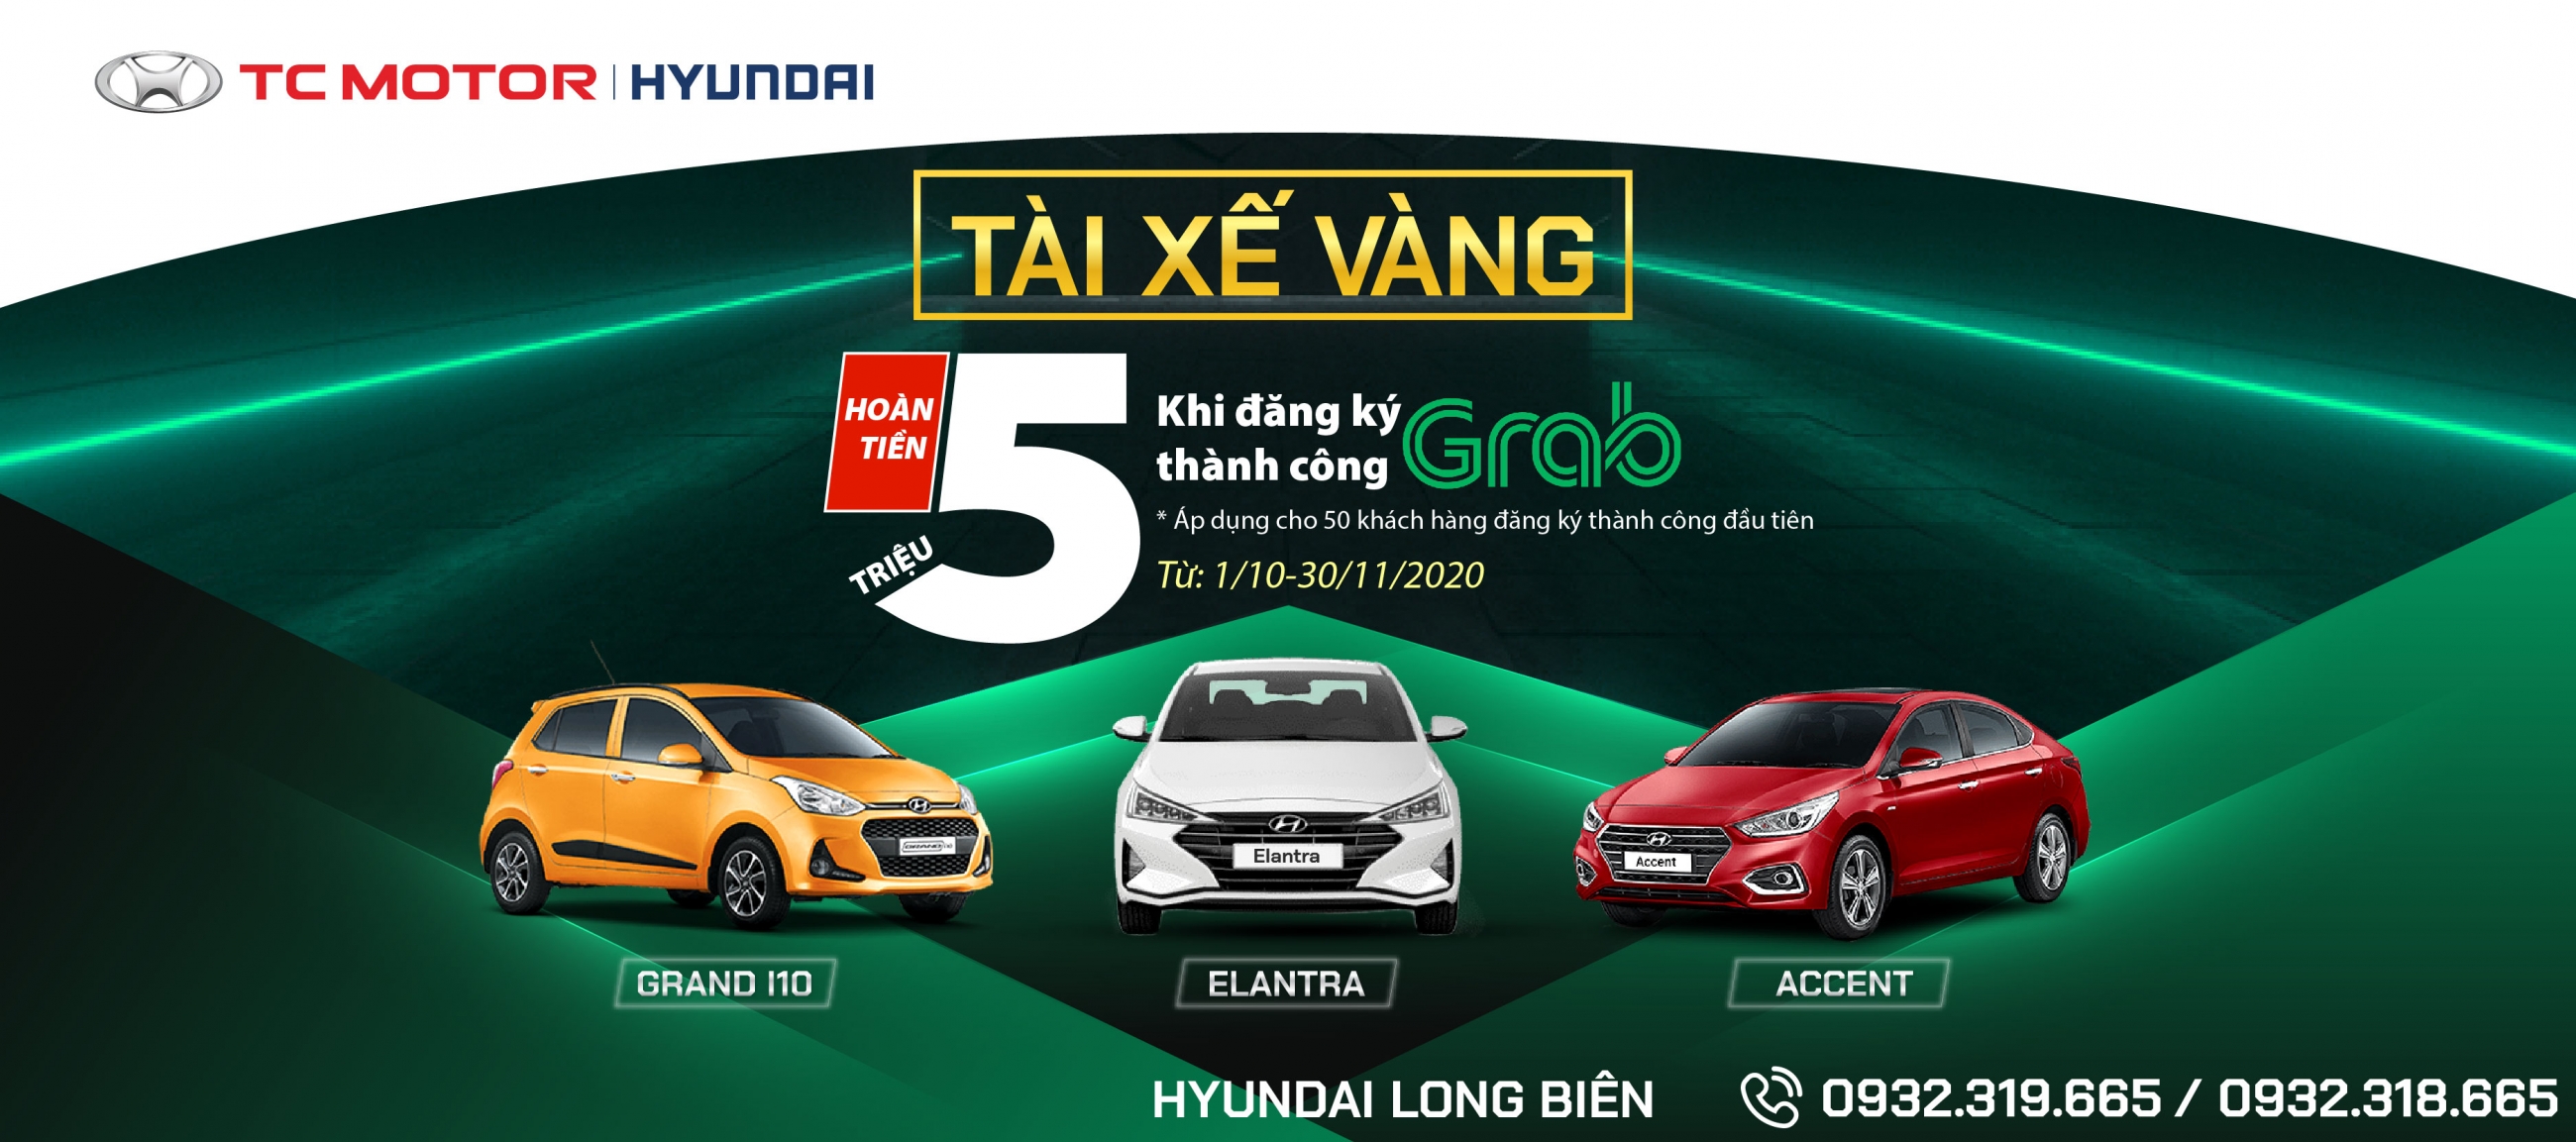 Chương trình "TÀI XẾ VÀNG" khi mua xe Elantra, Accetn, Grand i10 tại Hyundai Long Biên